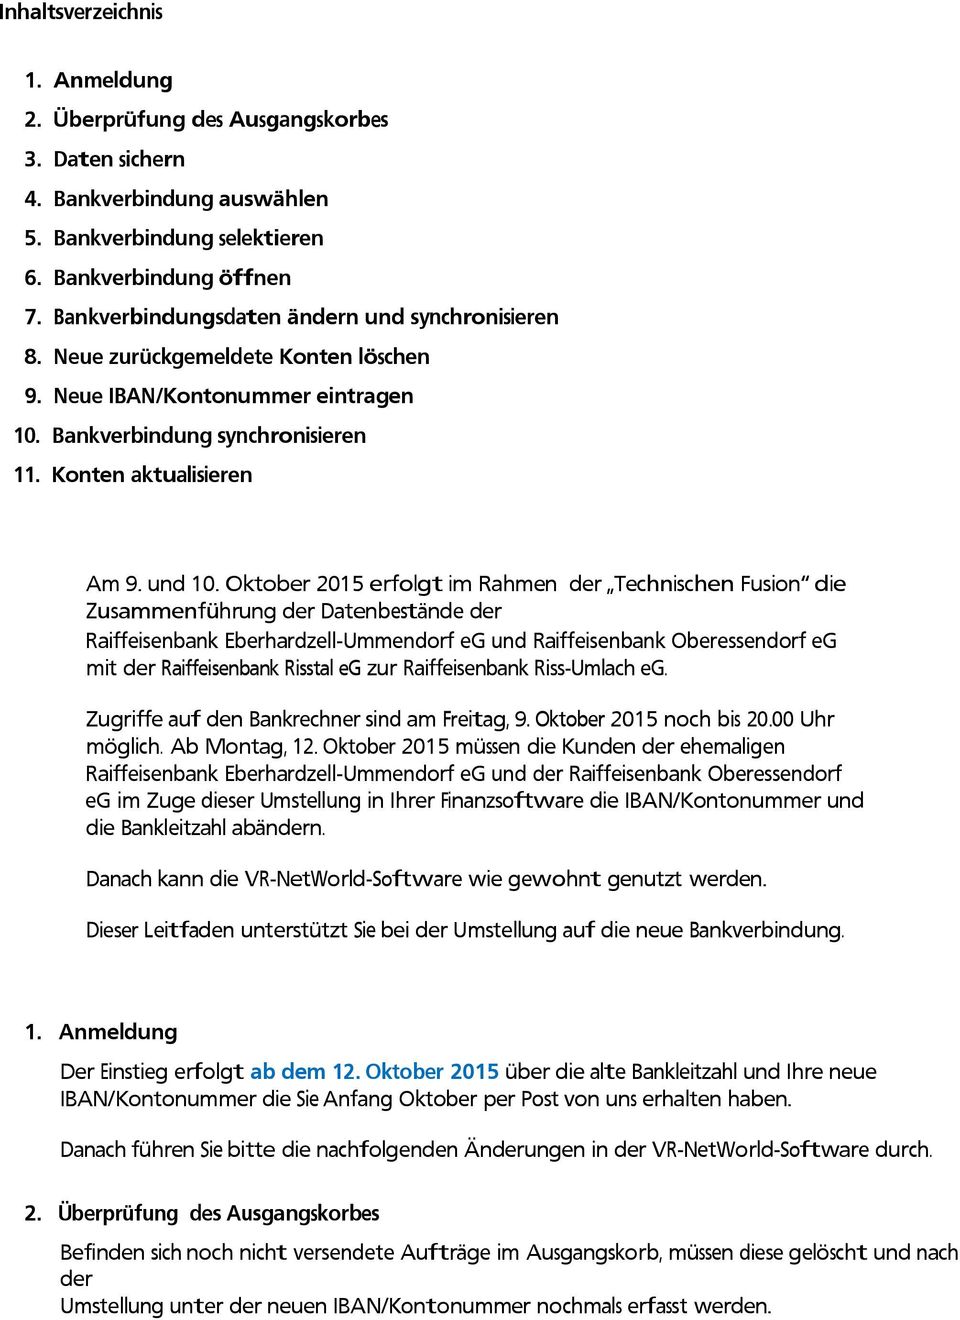 Oktober 2015 erfolgt im Rahmen der Technischen Fusion die Zusammenführung der Datenbestände der Raiffeisenbank Eberhardzell-Ummendorf eg und Raiffeisenbank Oberessendorf eg mit der Raiffeisenbank